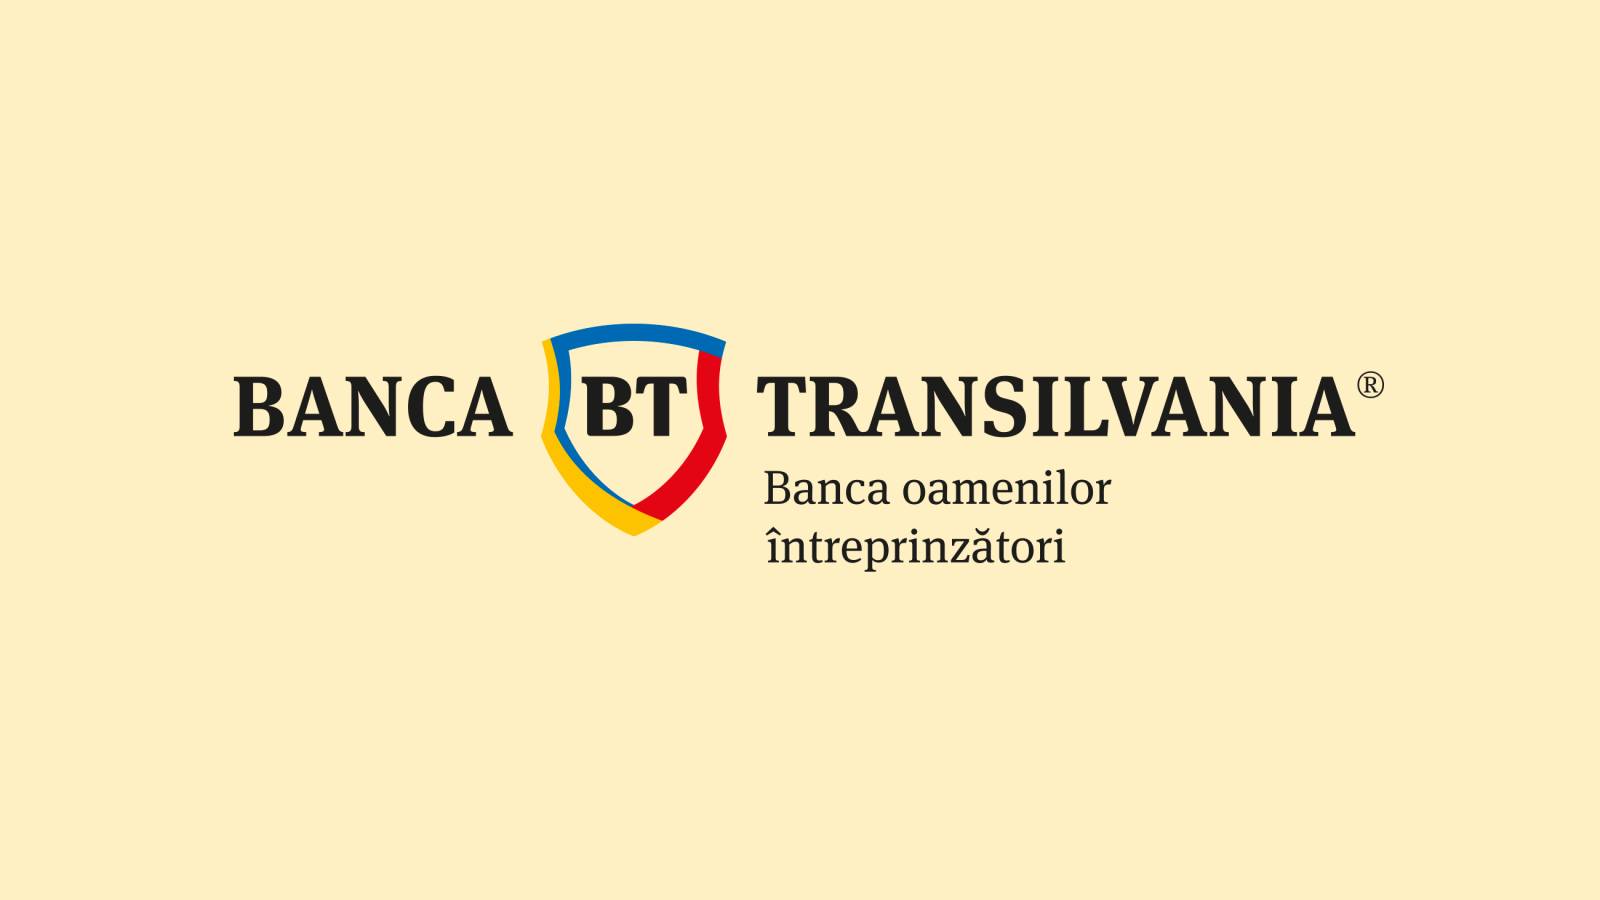 BANCA Transilvania Mesure Officielle IMPORTANT DERNIER MOMENT Message Clients